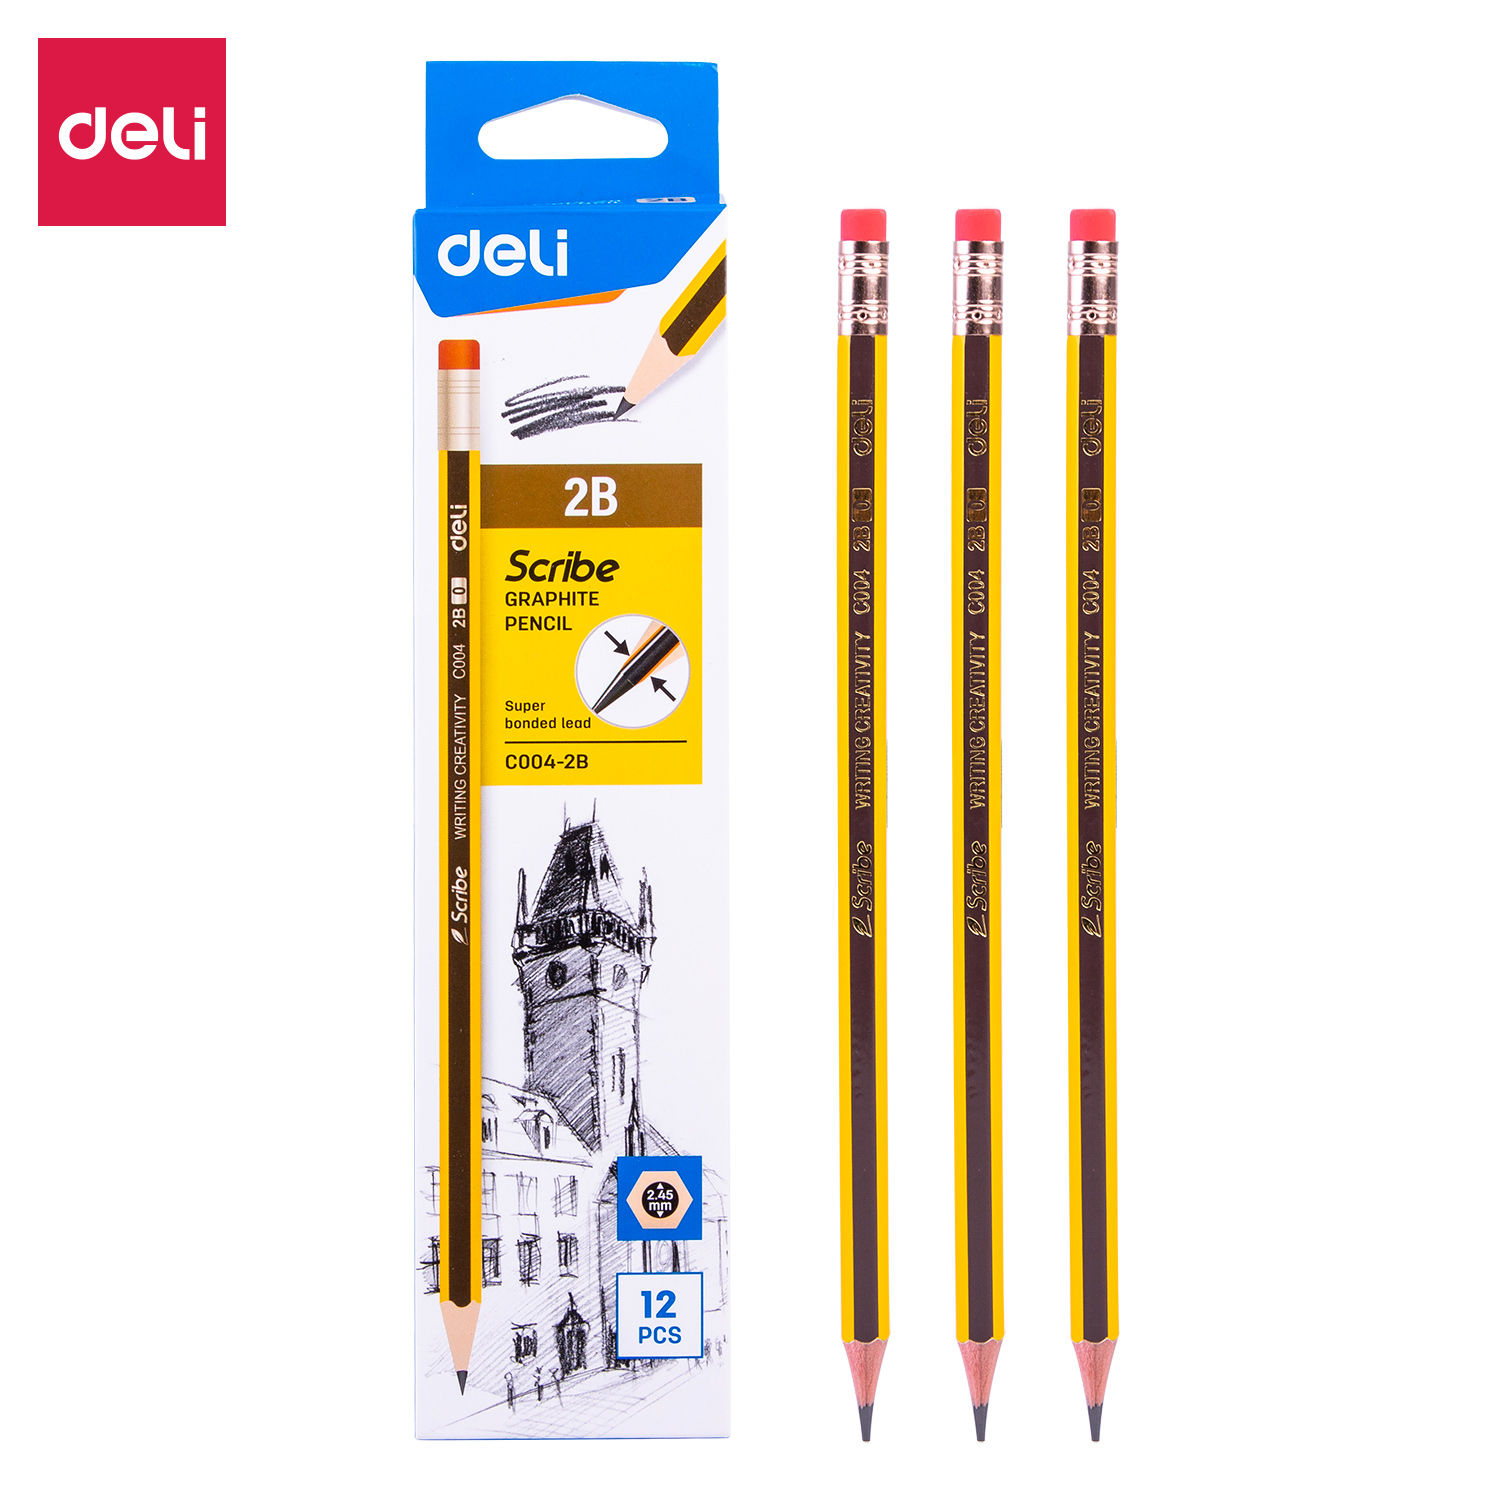 Deli-EC004-2B Graphite Pencil